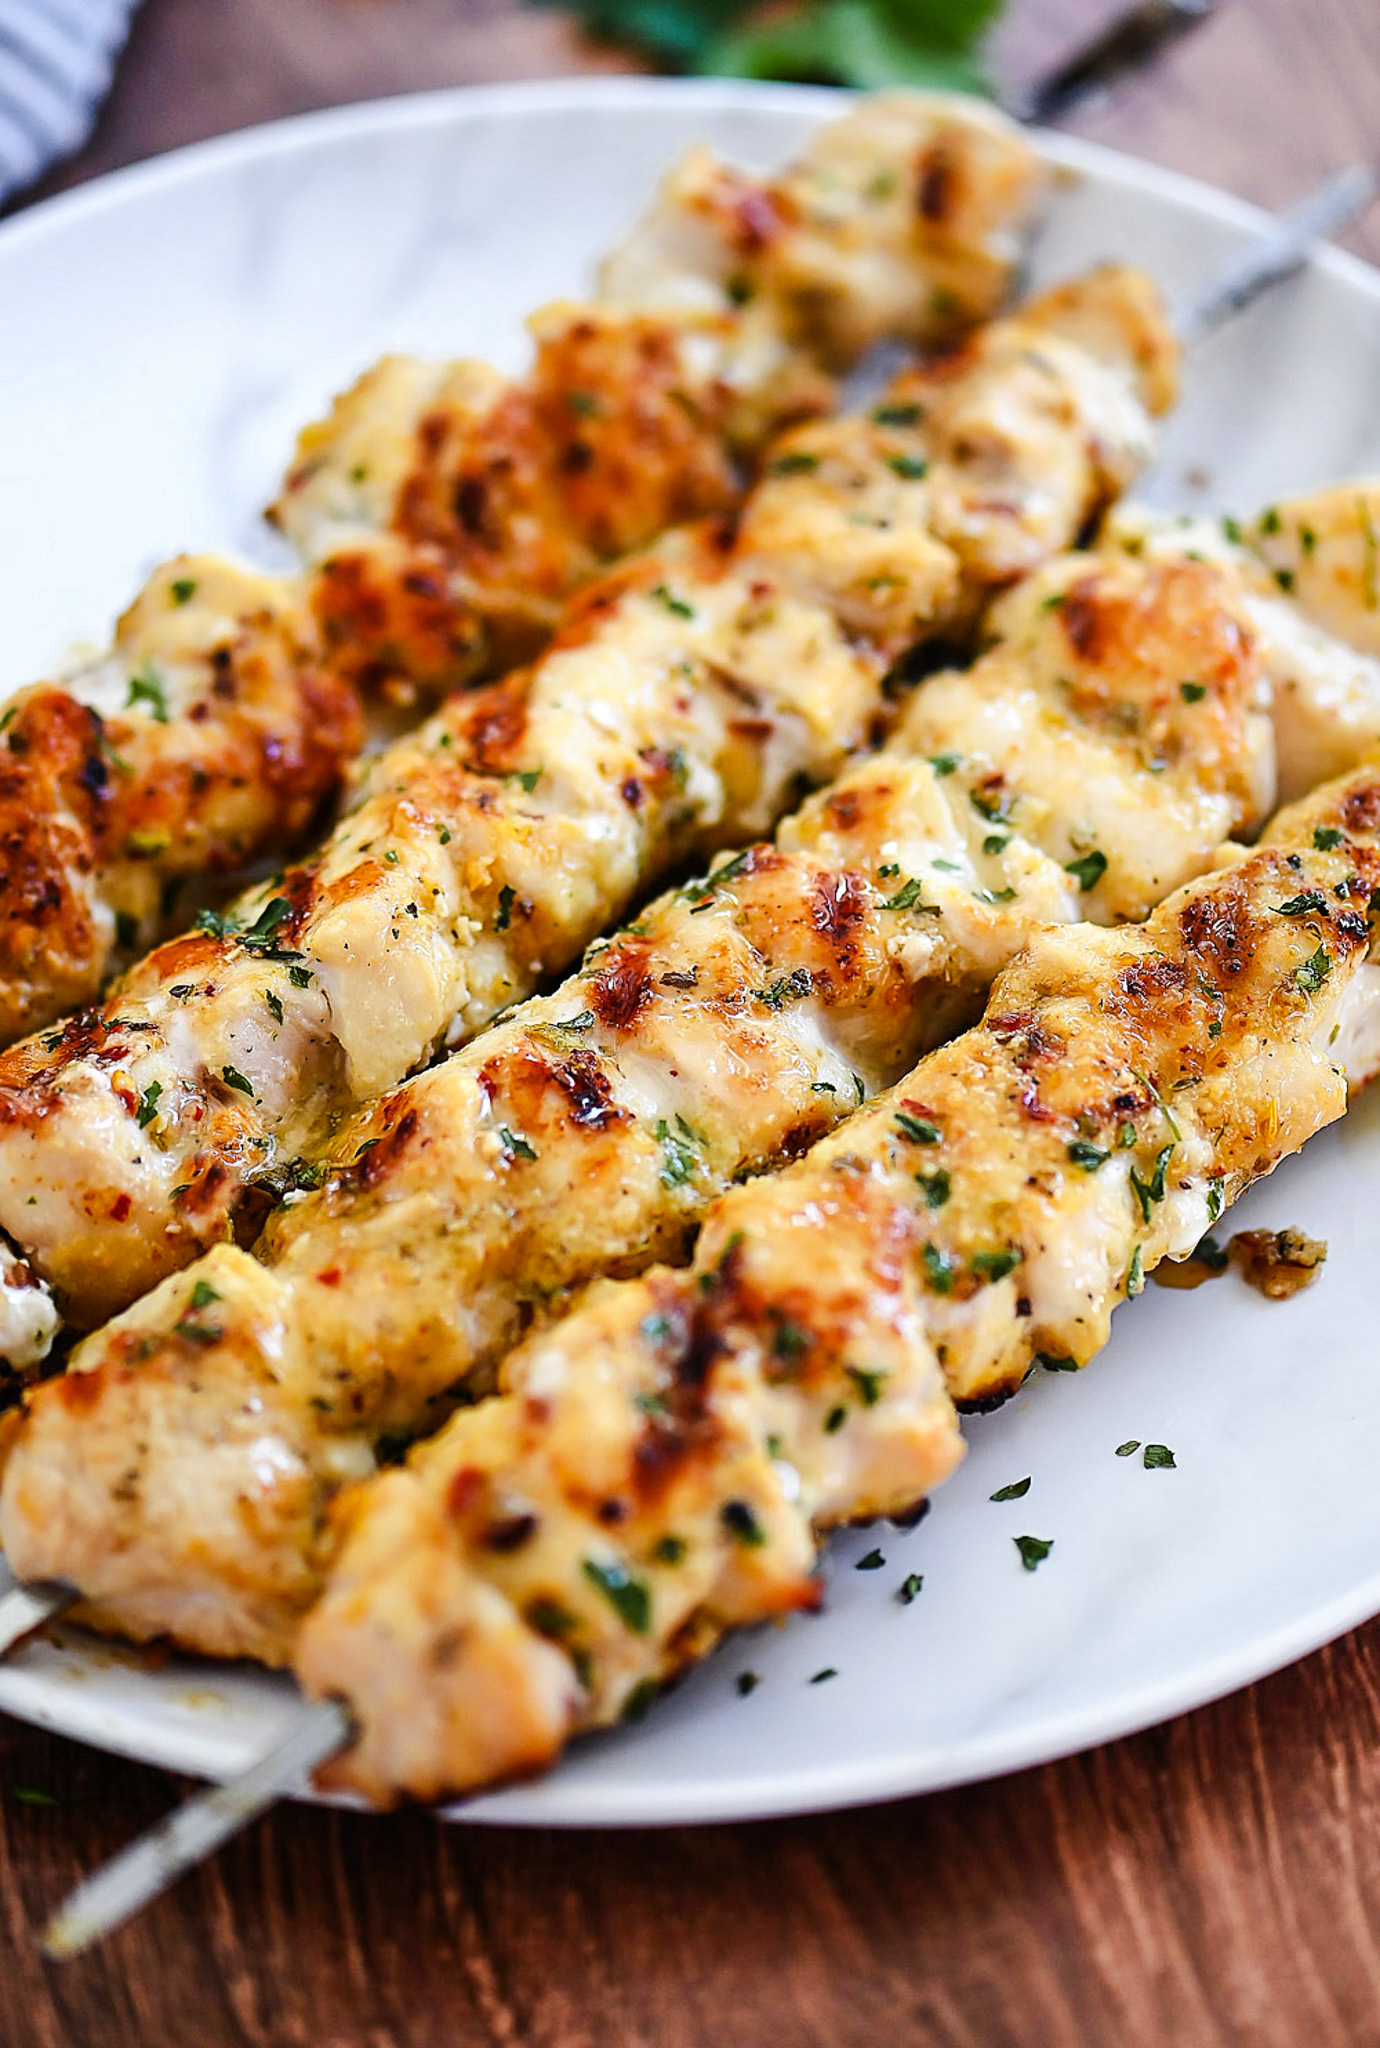 Parmesan Chicken Kebabs with Garlic